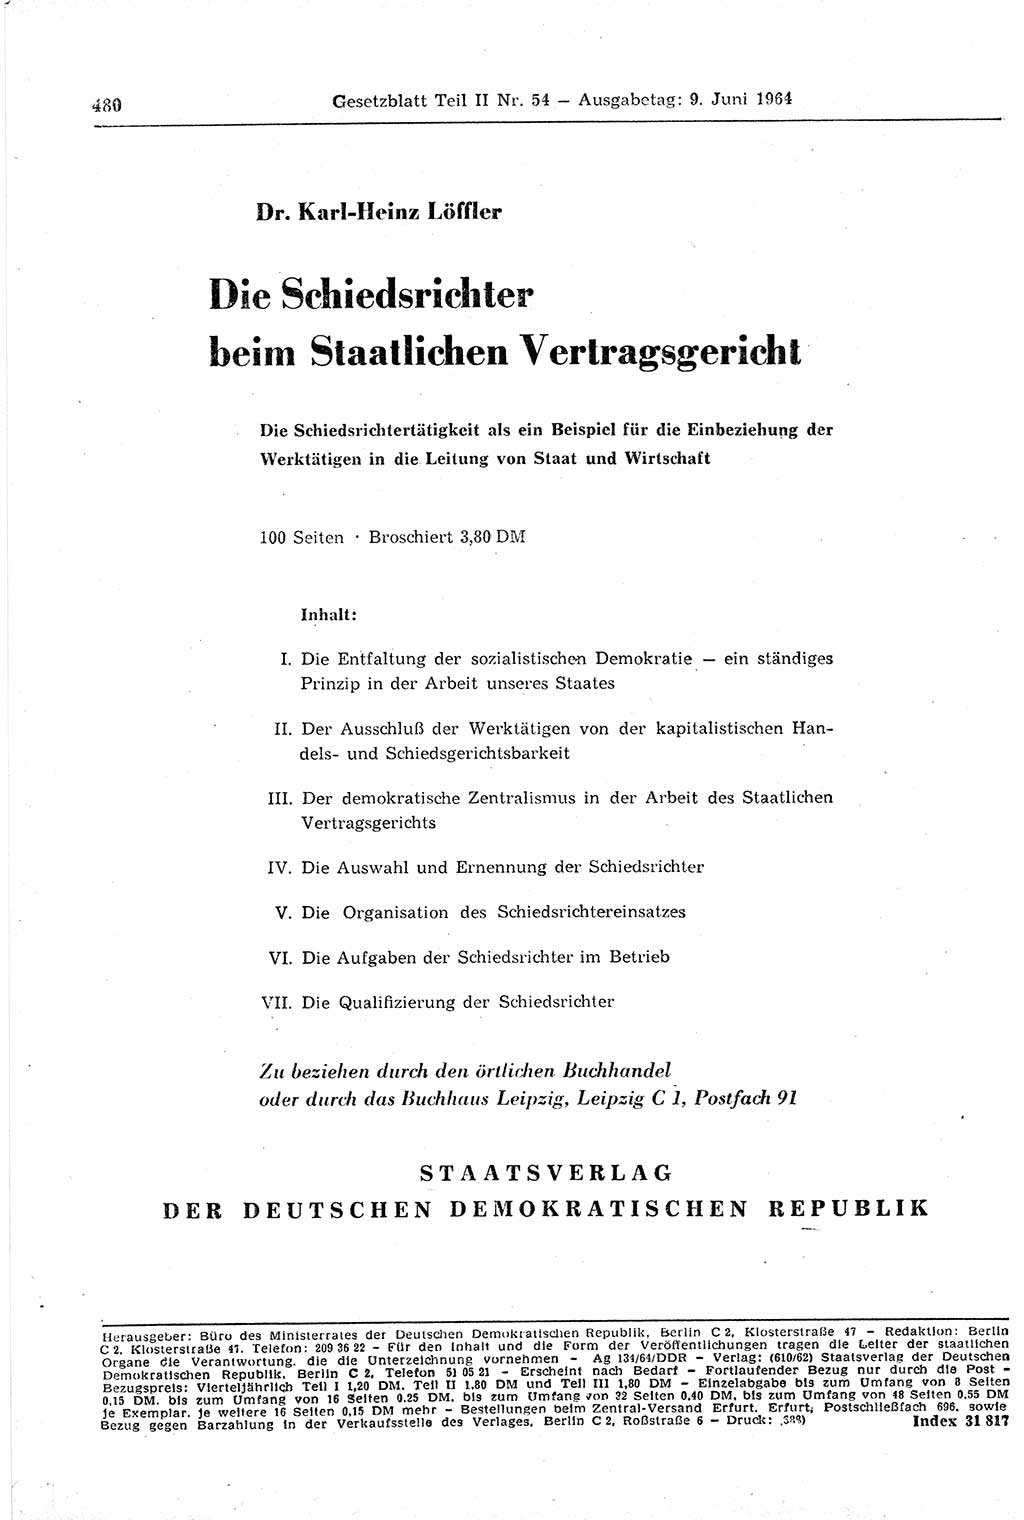 Gesetzblatt (GBl.) der Deutschen Demokratischen Republik (DDR) Teil ⅠⅠ 1964, Seite 480 (GBl. DDR ⅠⅠ 1964, S. 480)